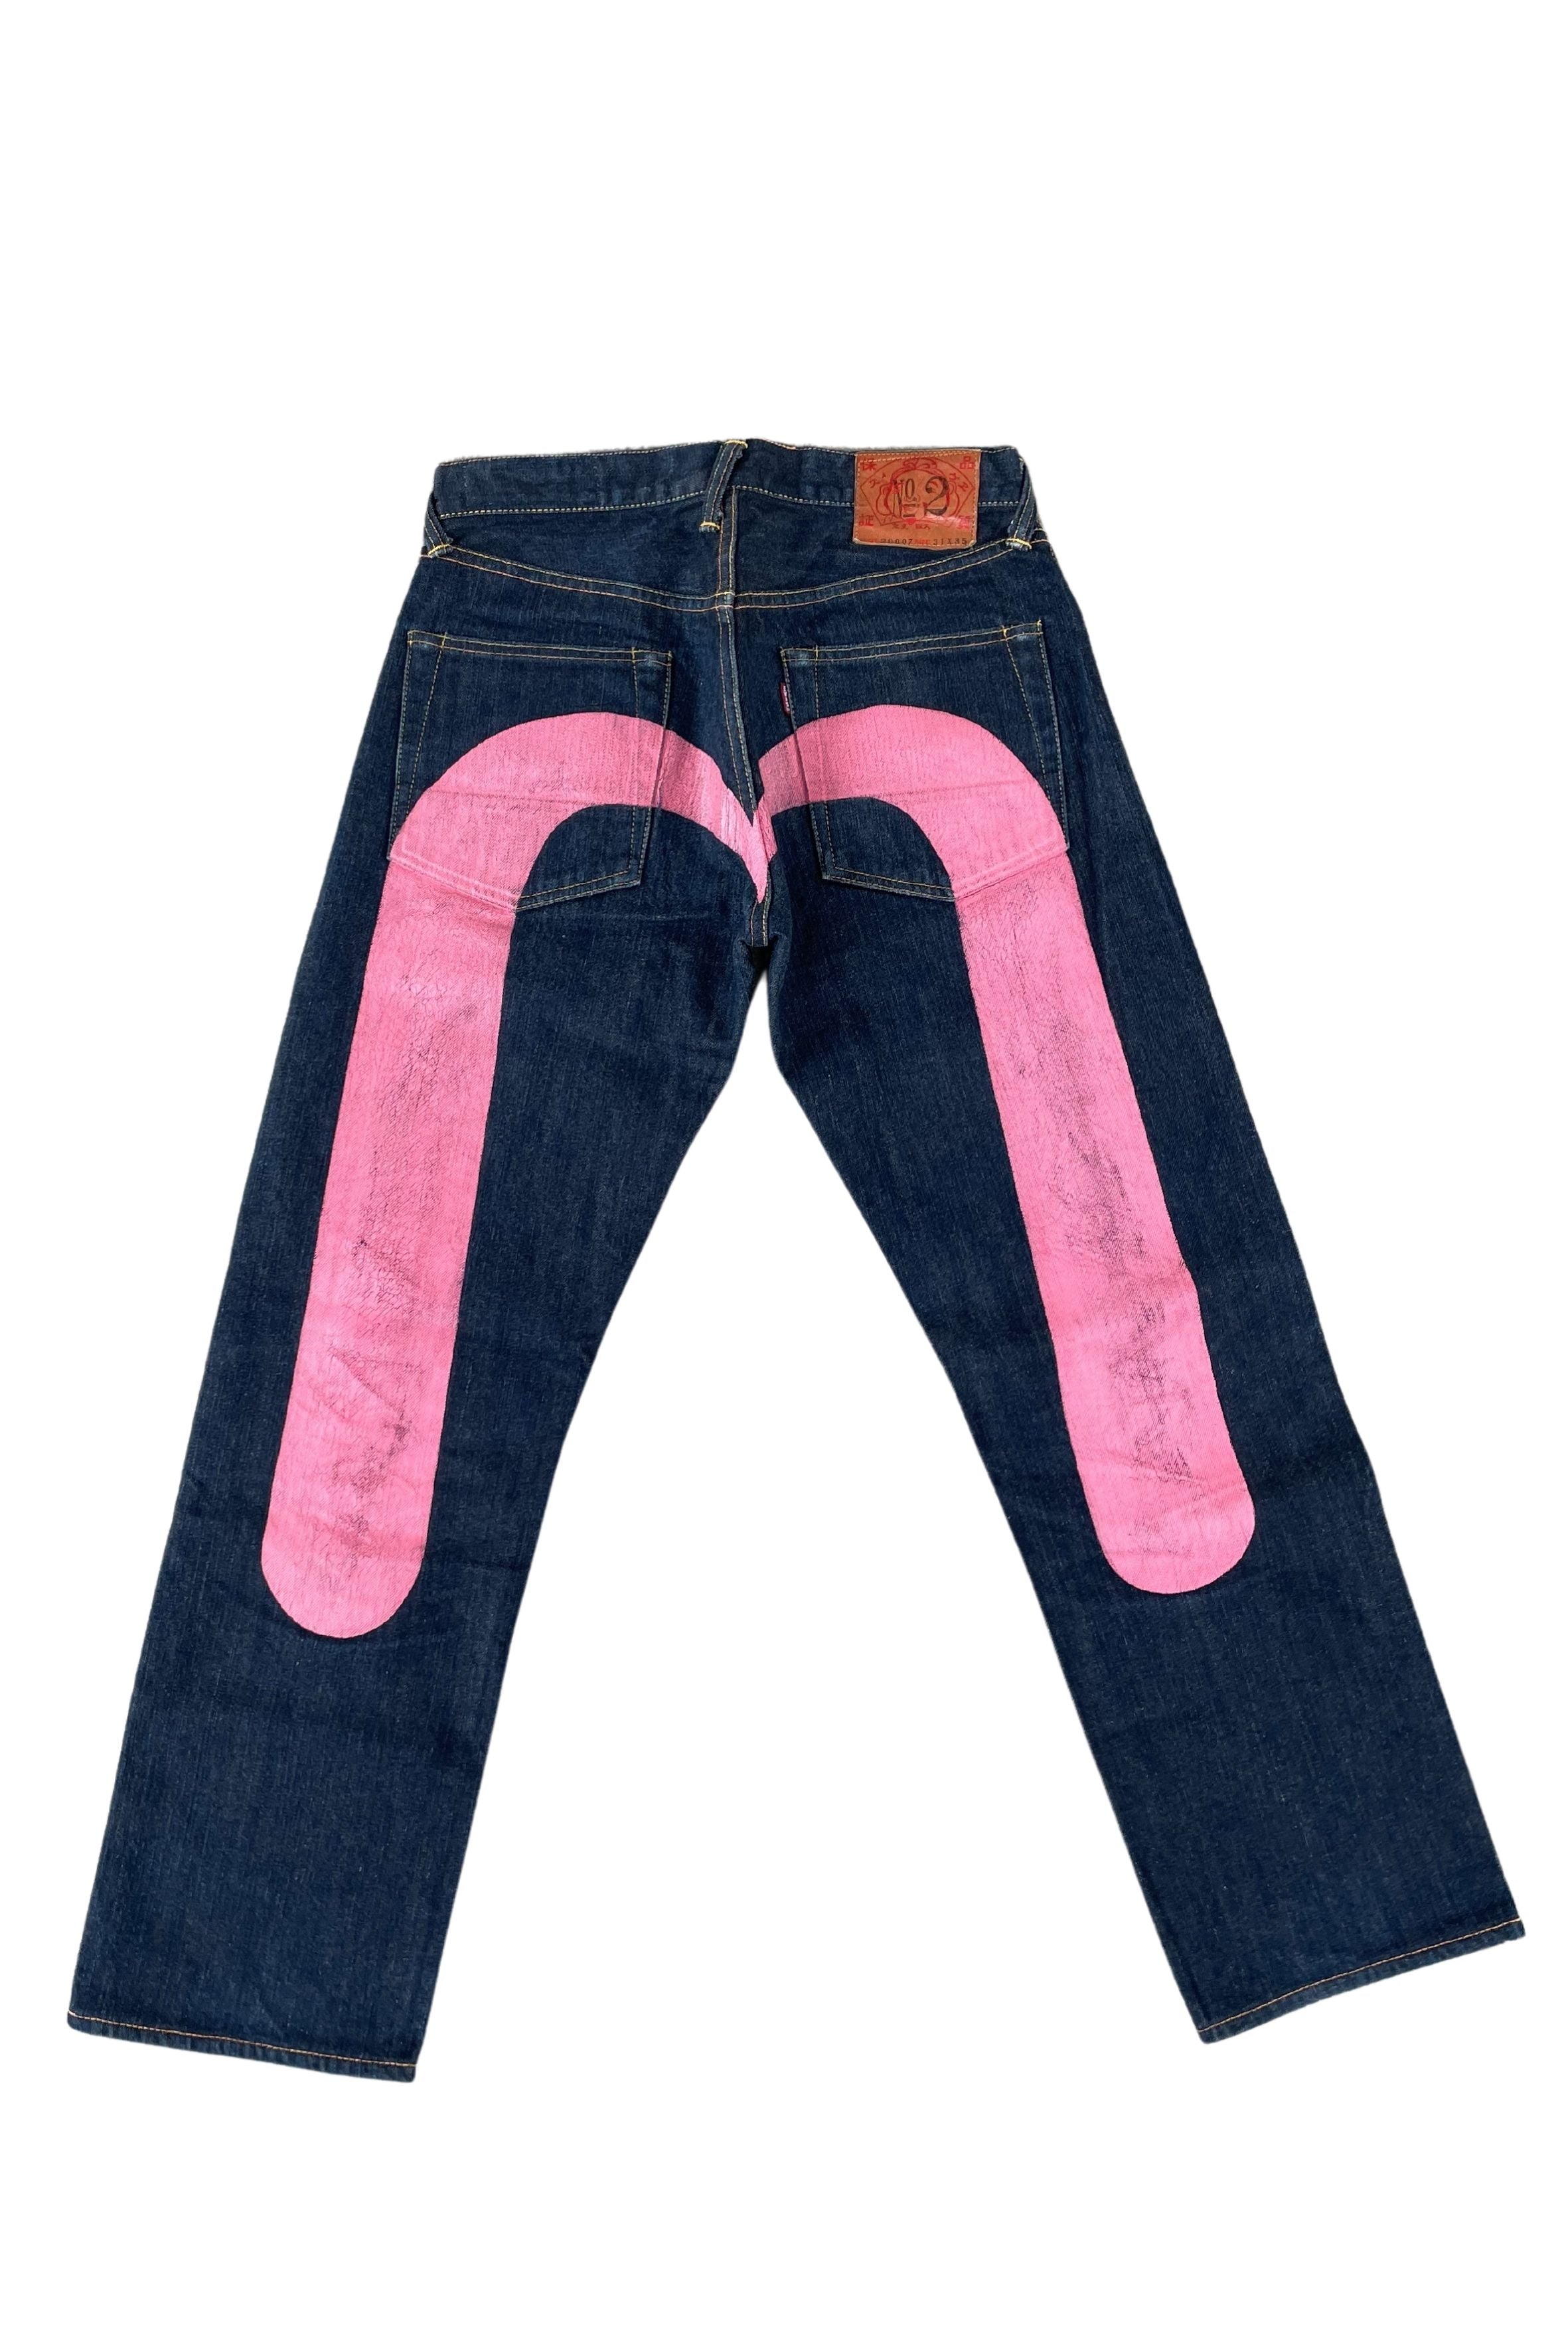 Evisu Pink Logo Jeans (RARE) 31 X 35